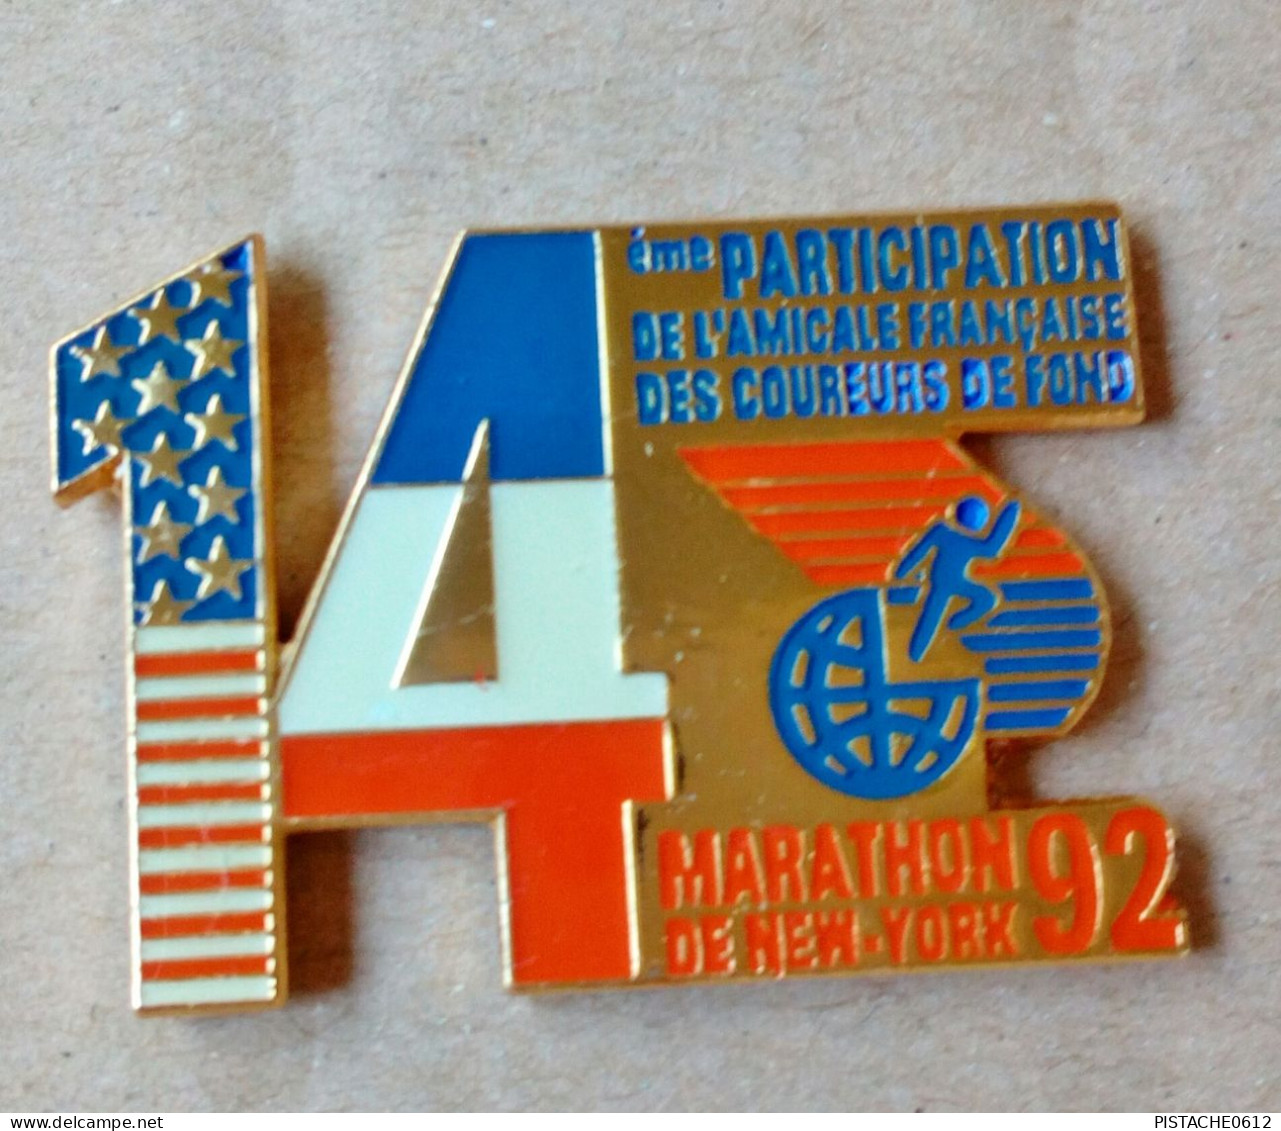 Pin's Athlétisme Marathon De New-York 92 14 Eme De L'Amicale Française Des Coureurs De Fond - Athlétisme